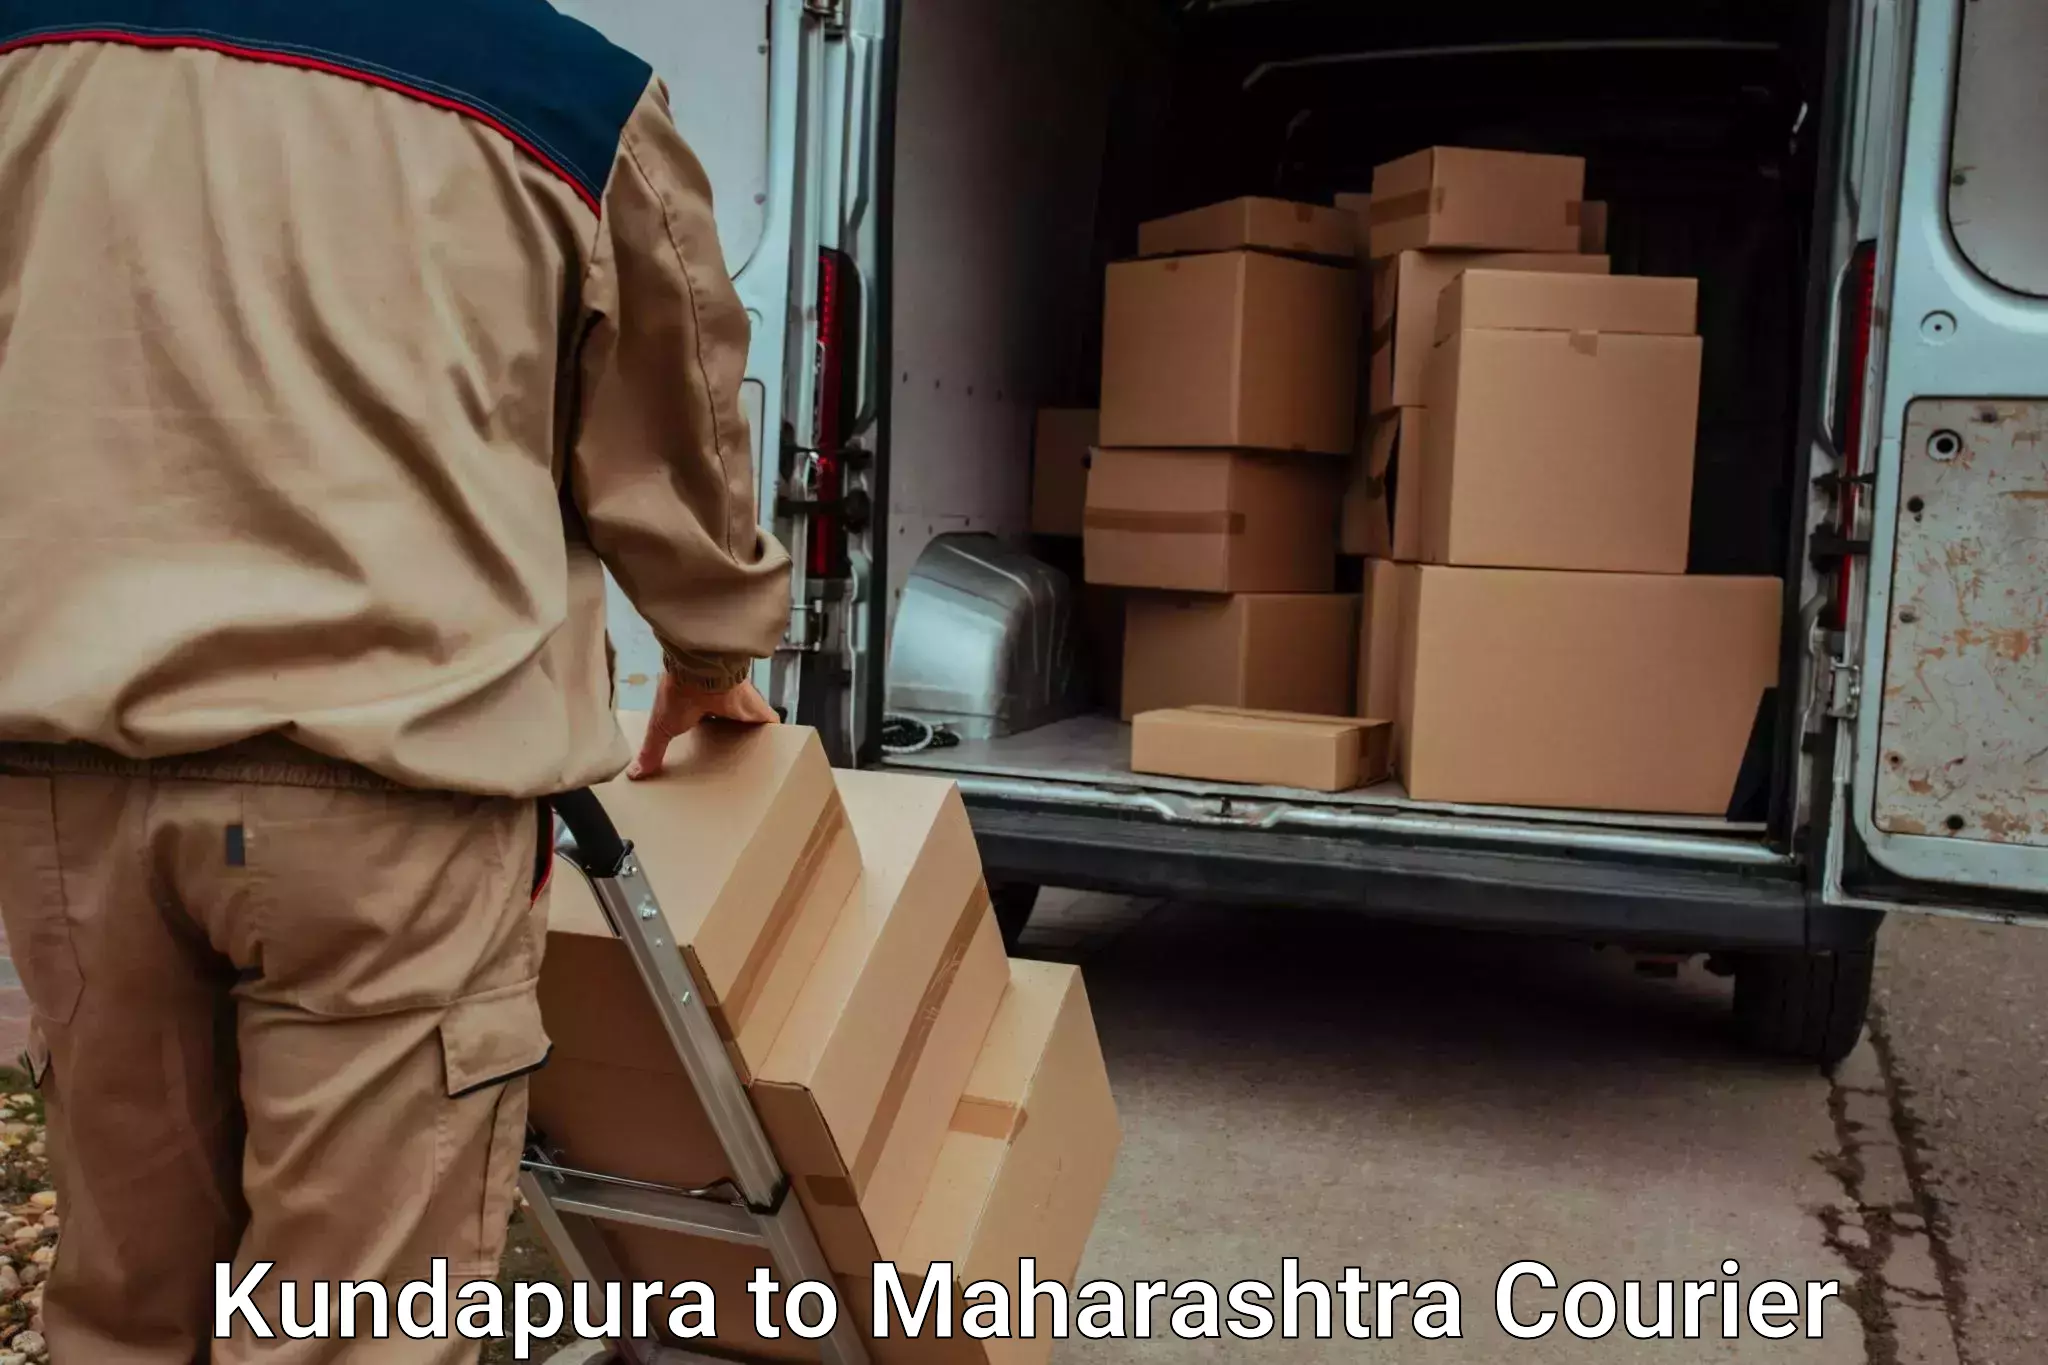 Moving and packing experts Kundapura to Kudus